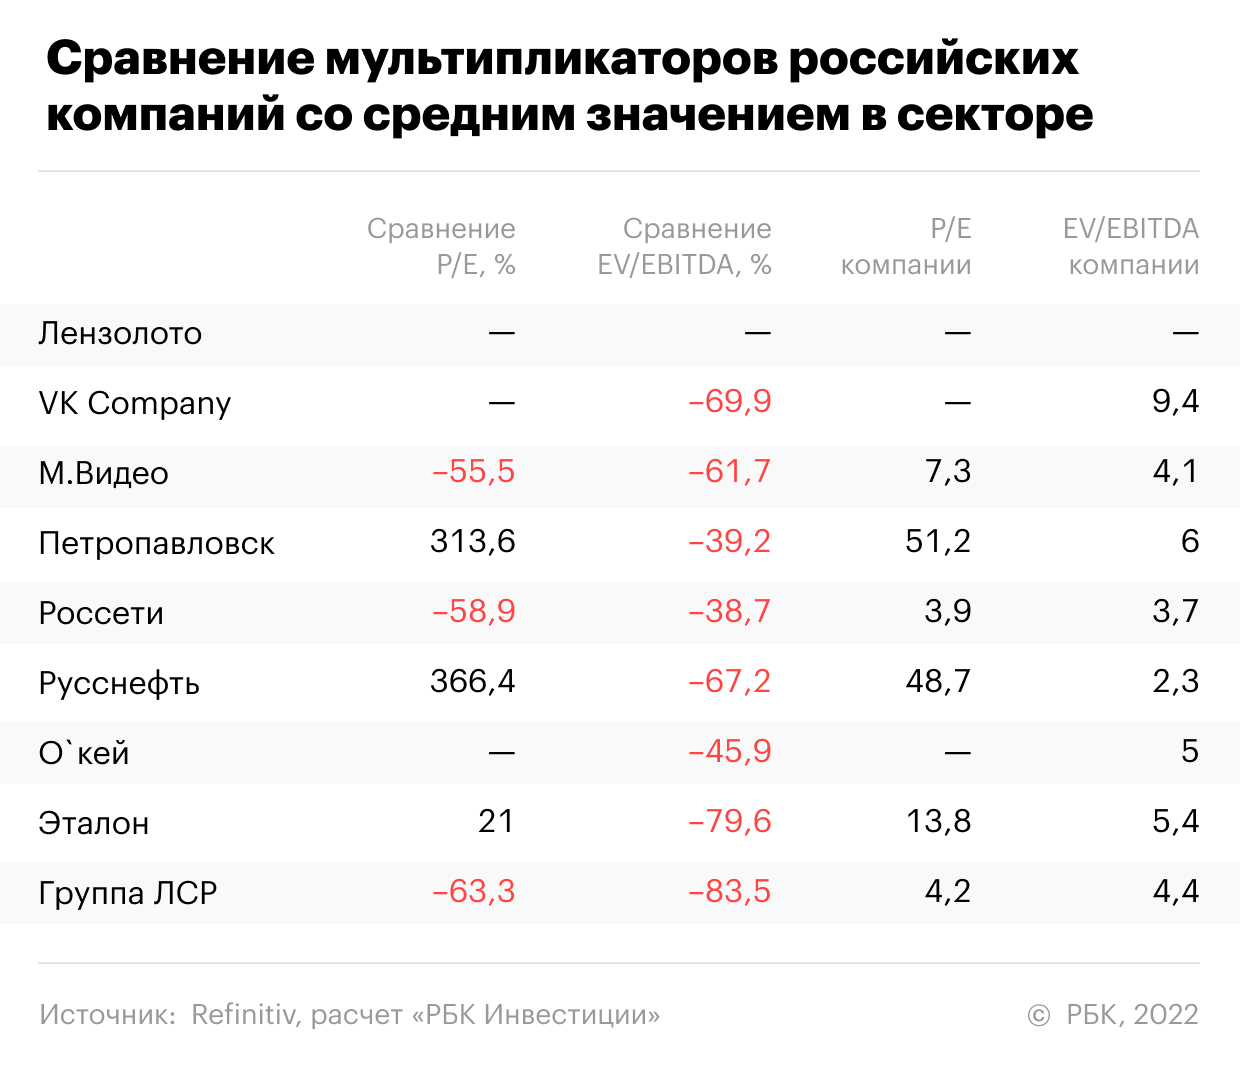 Сравнение мультипликаторов самых подешевевших российских компаний